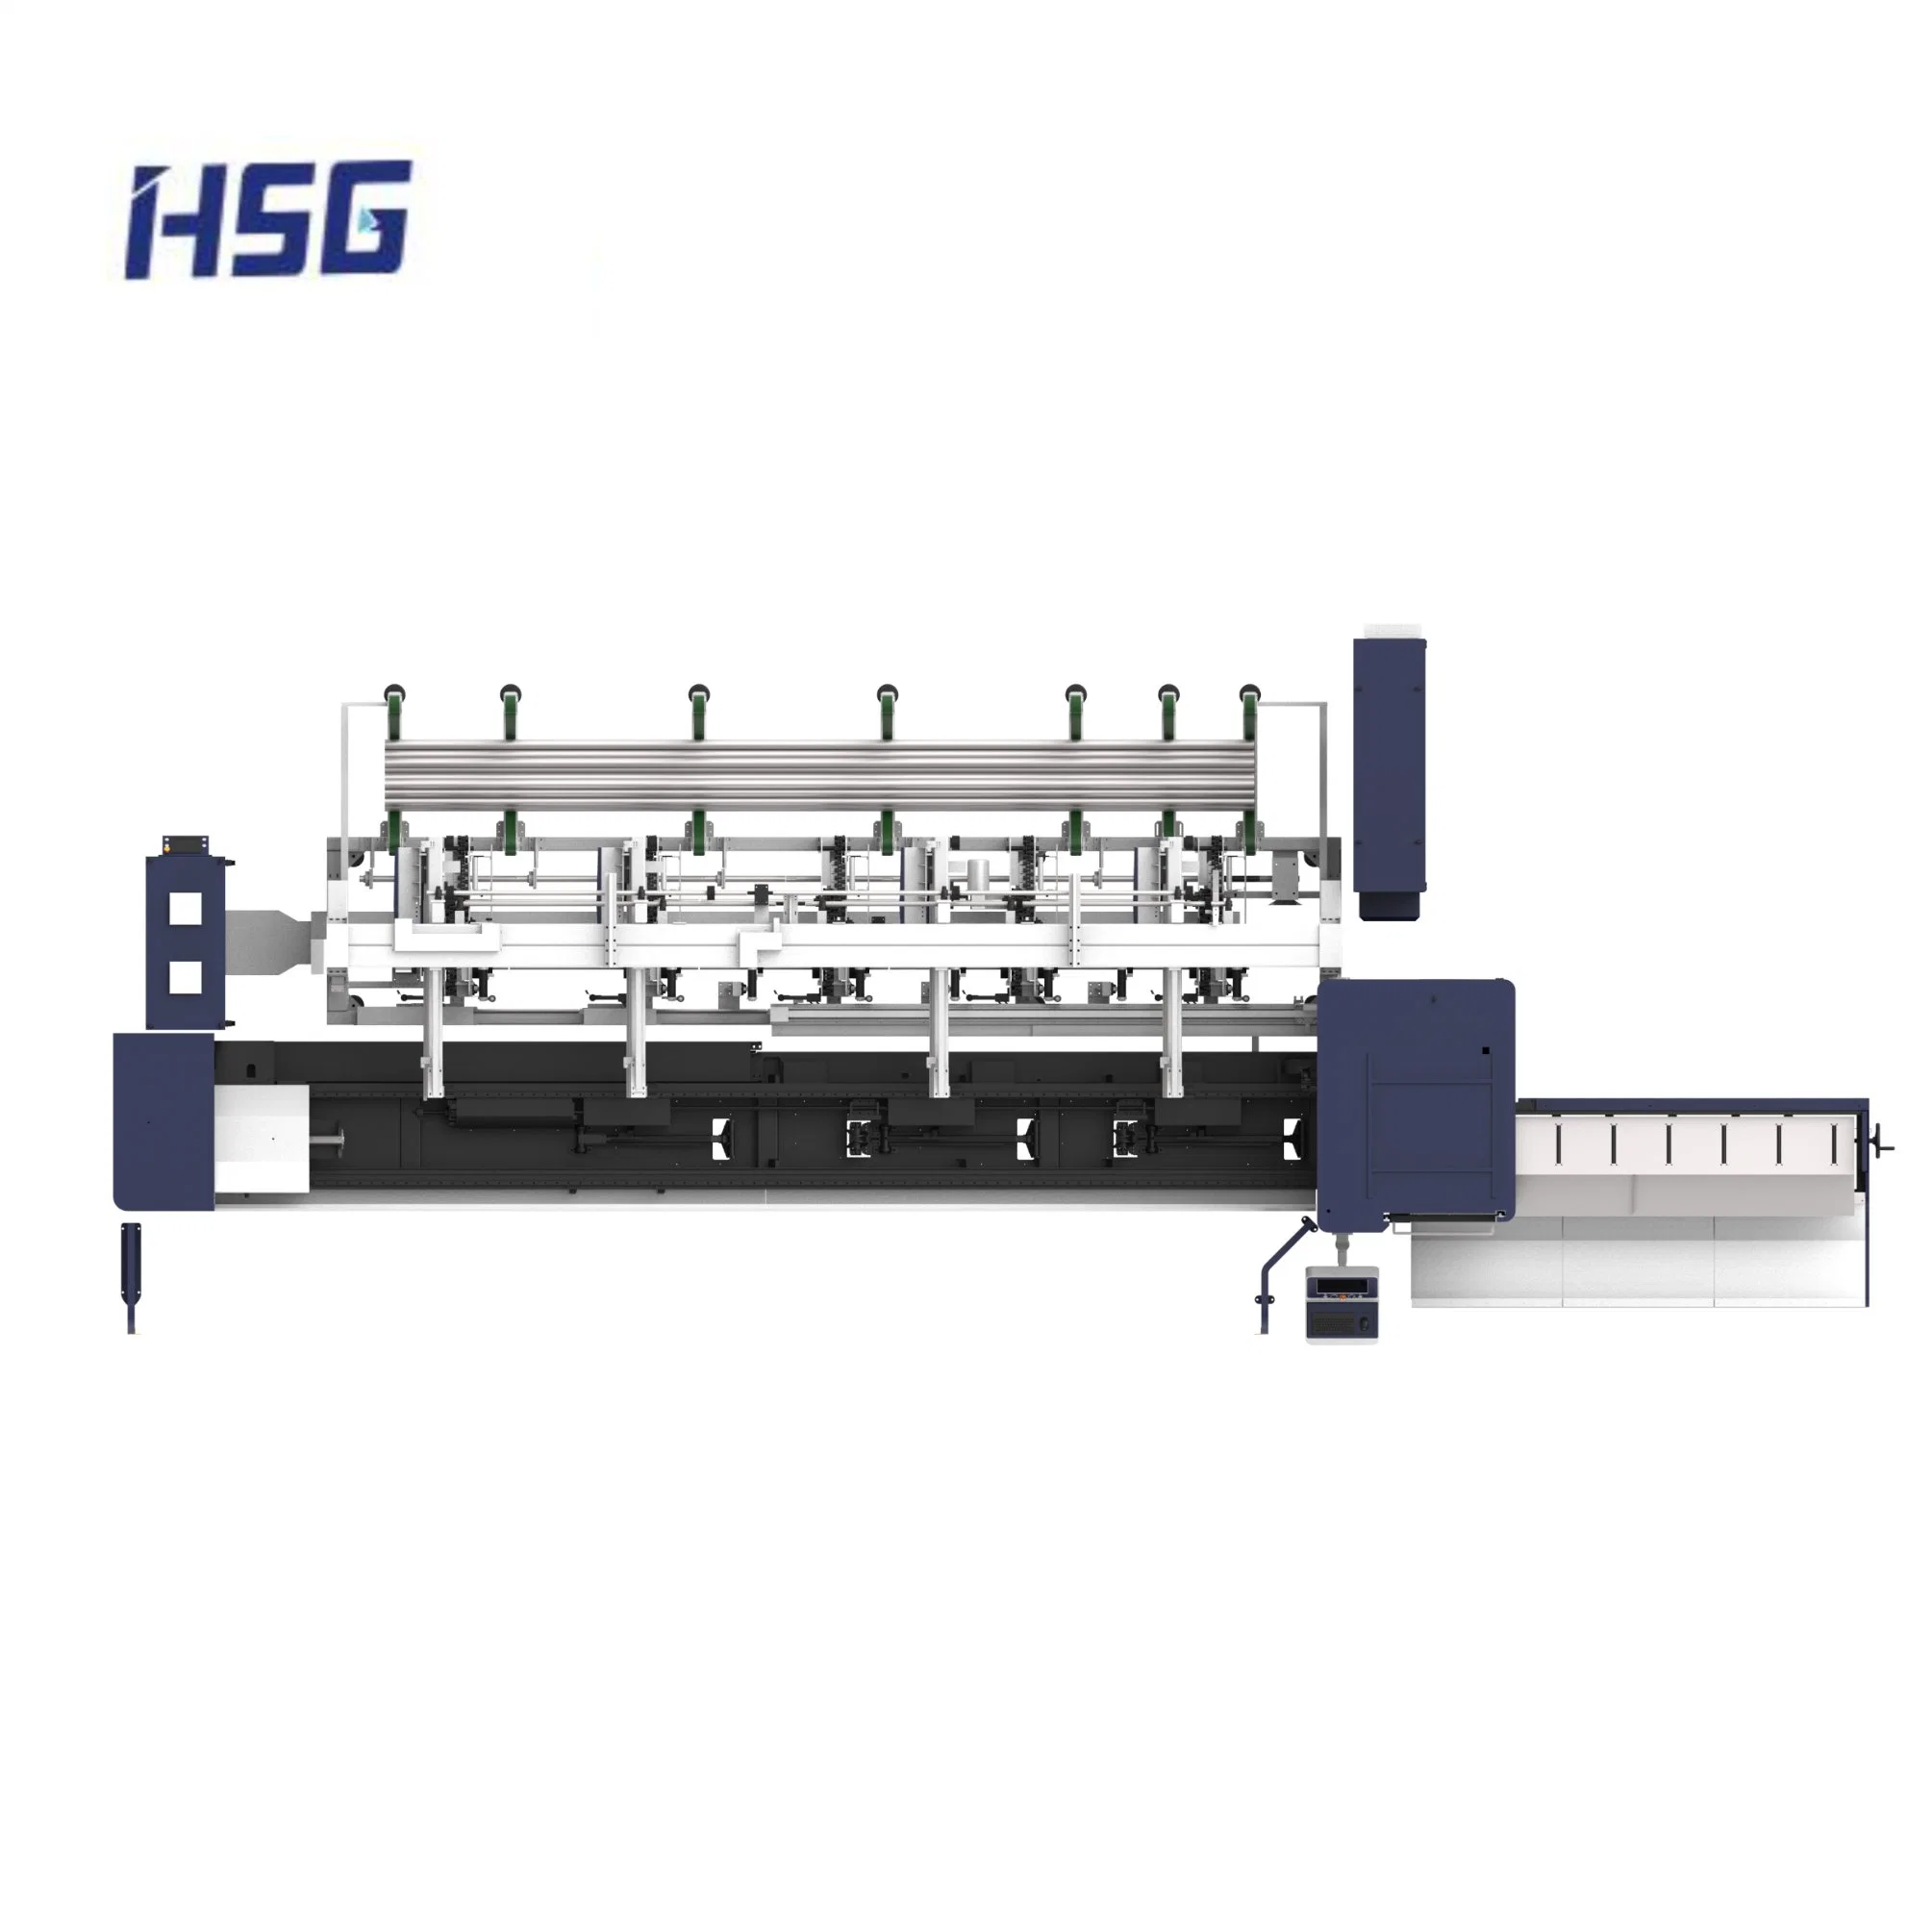 Portabrocas de Hsg Digital láser Máquina de corte láser de tubo de IPG/Raycus 1500-4000W Fuente de alimentación